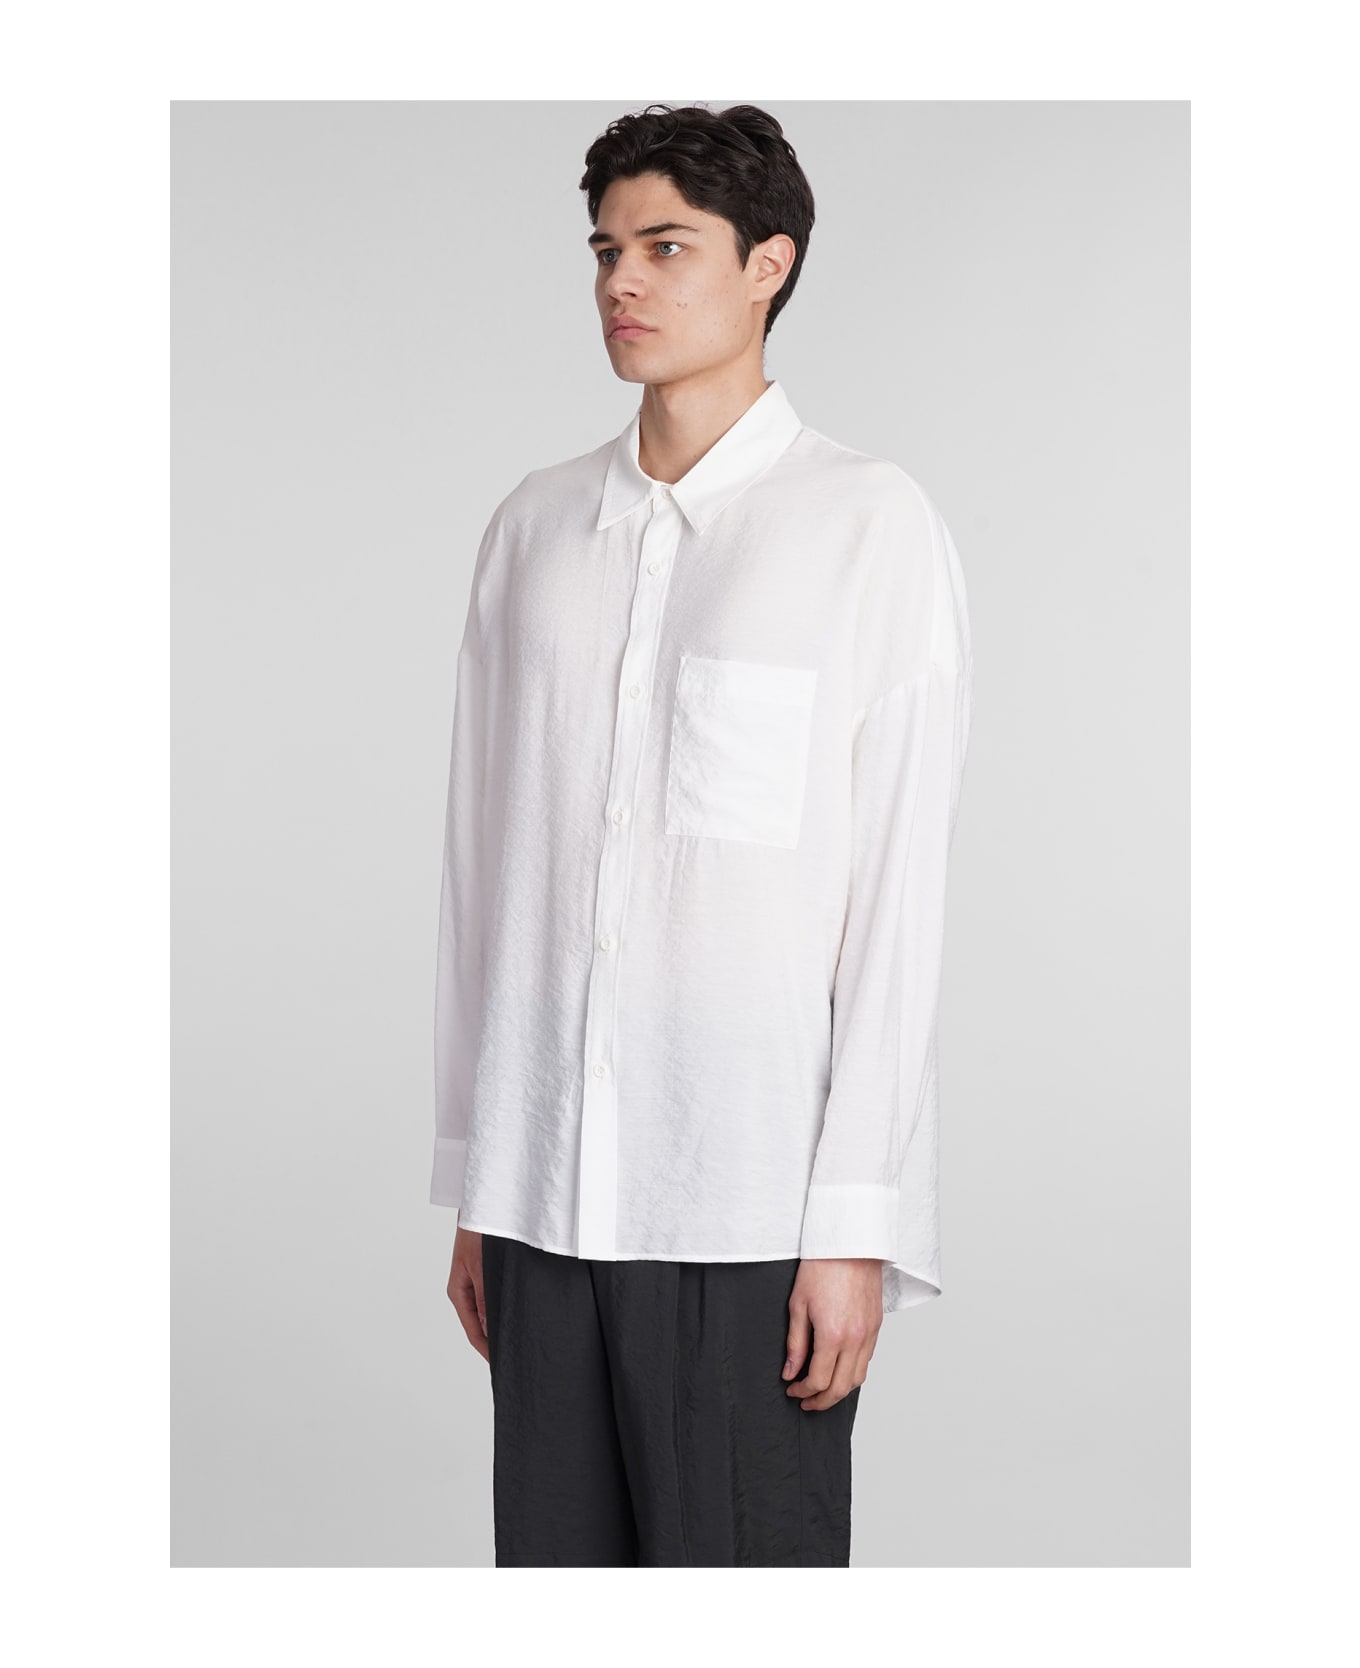 Attachment Shirt In White Nylon - white